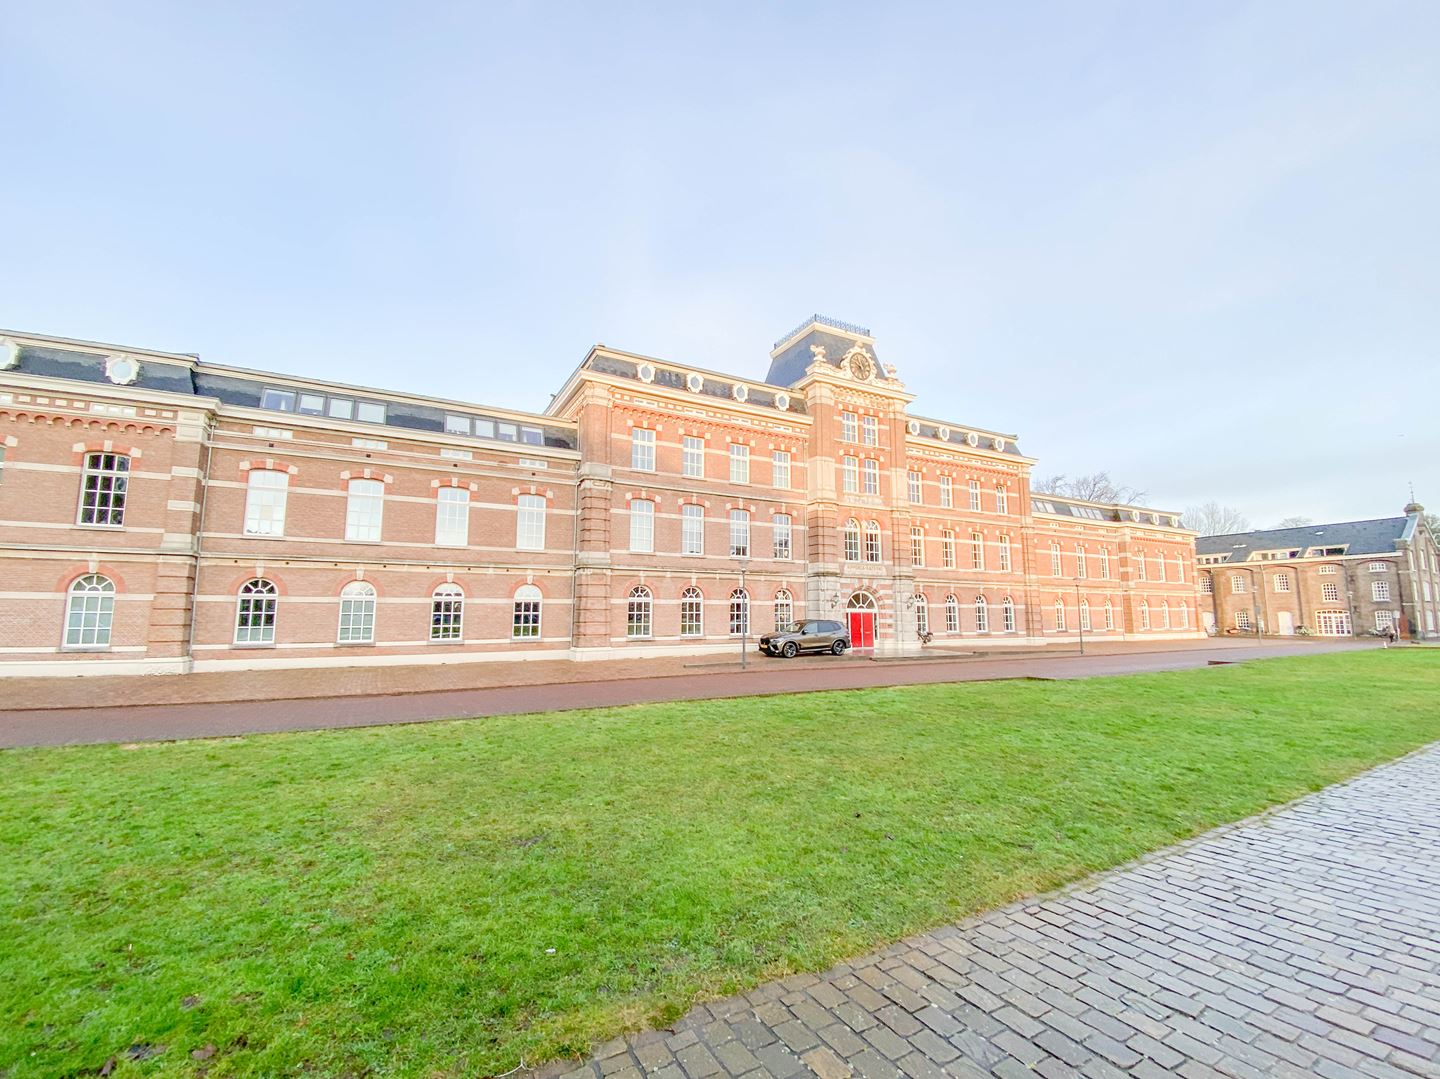 Kamer te huur op het Kazerneplein in Haarlem